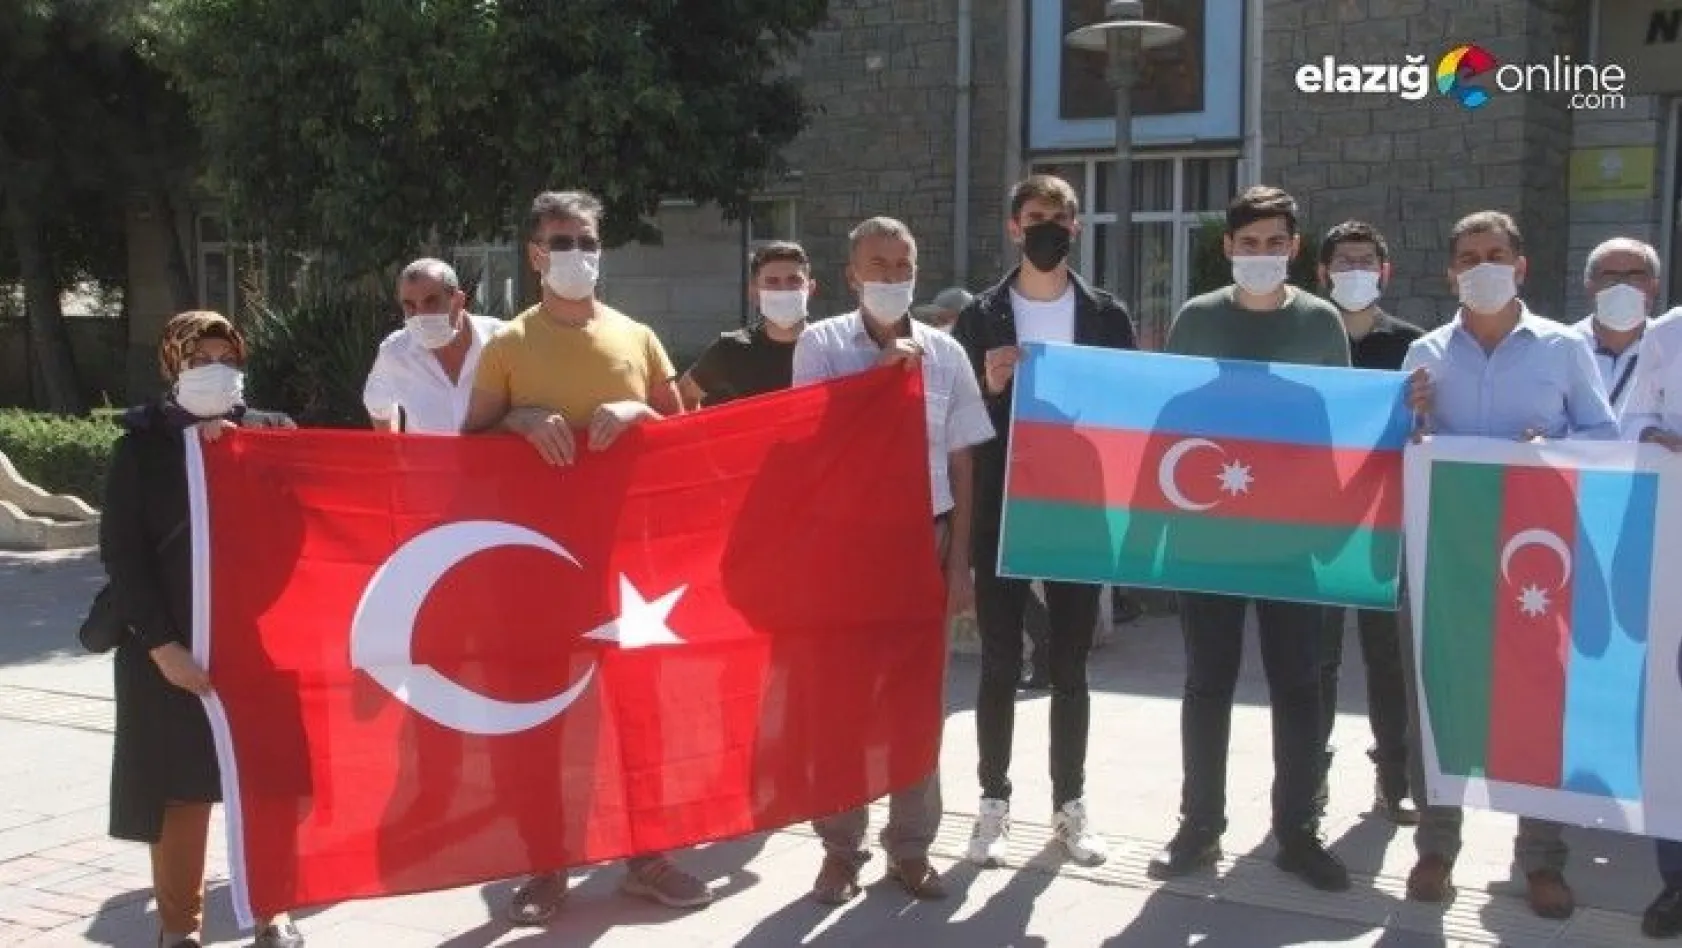 Elazığ'dan Azerbaycan'a destek